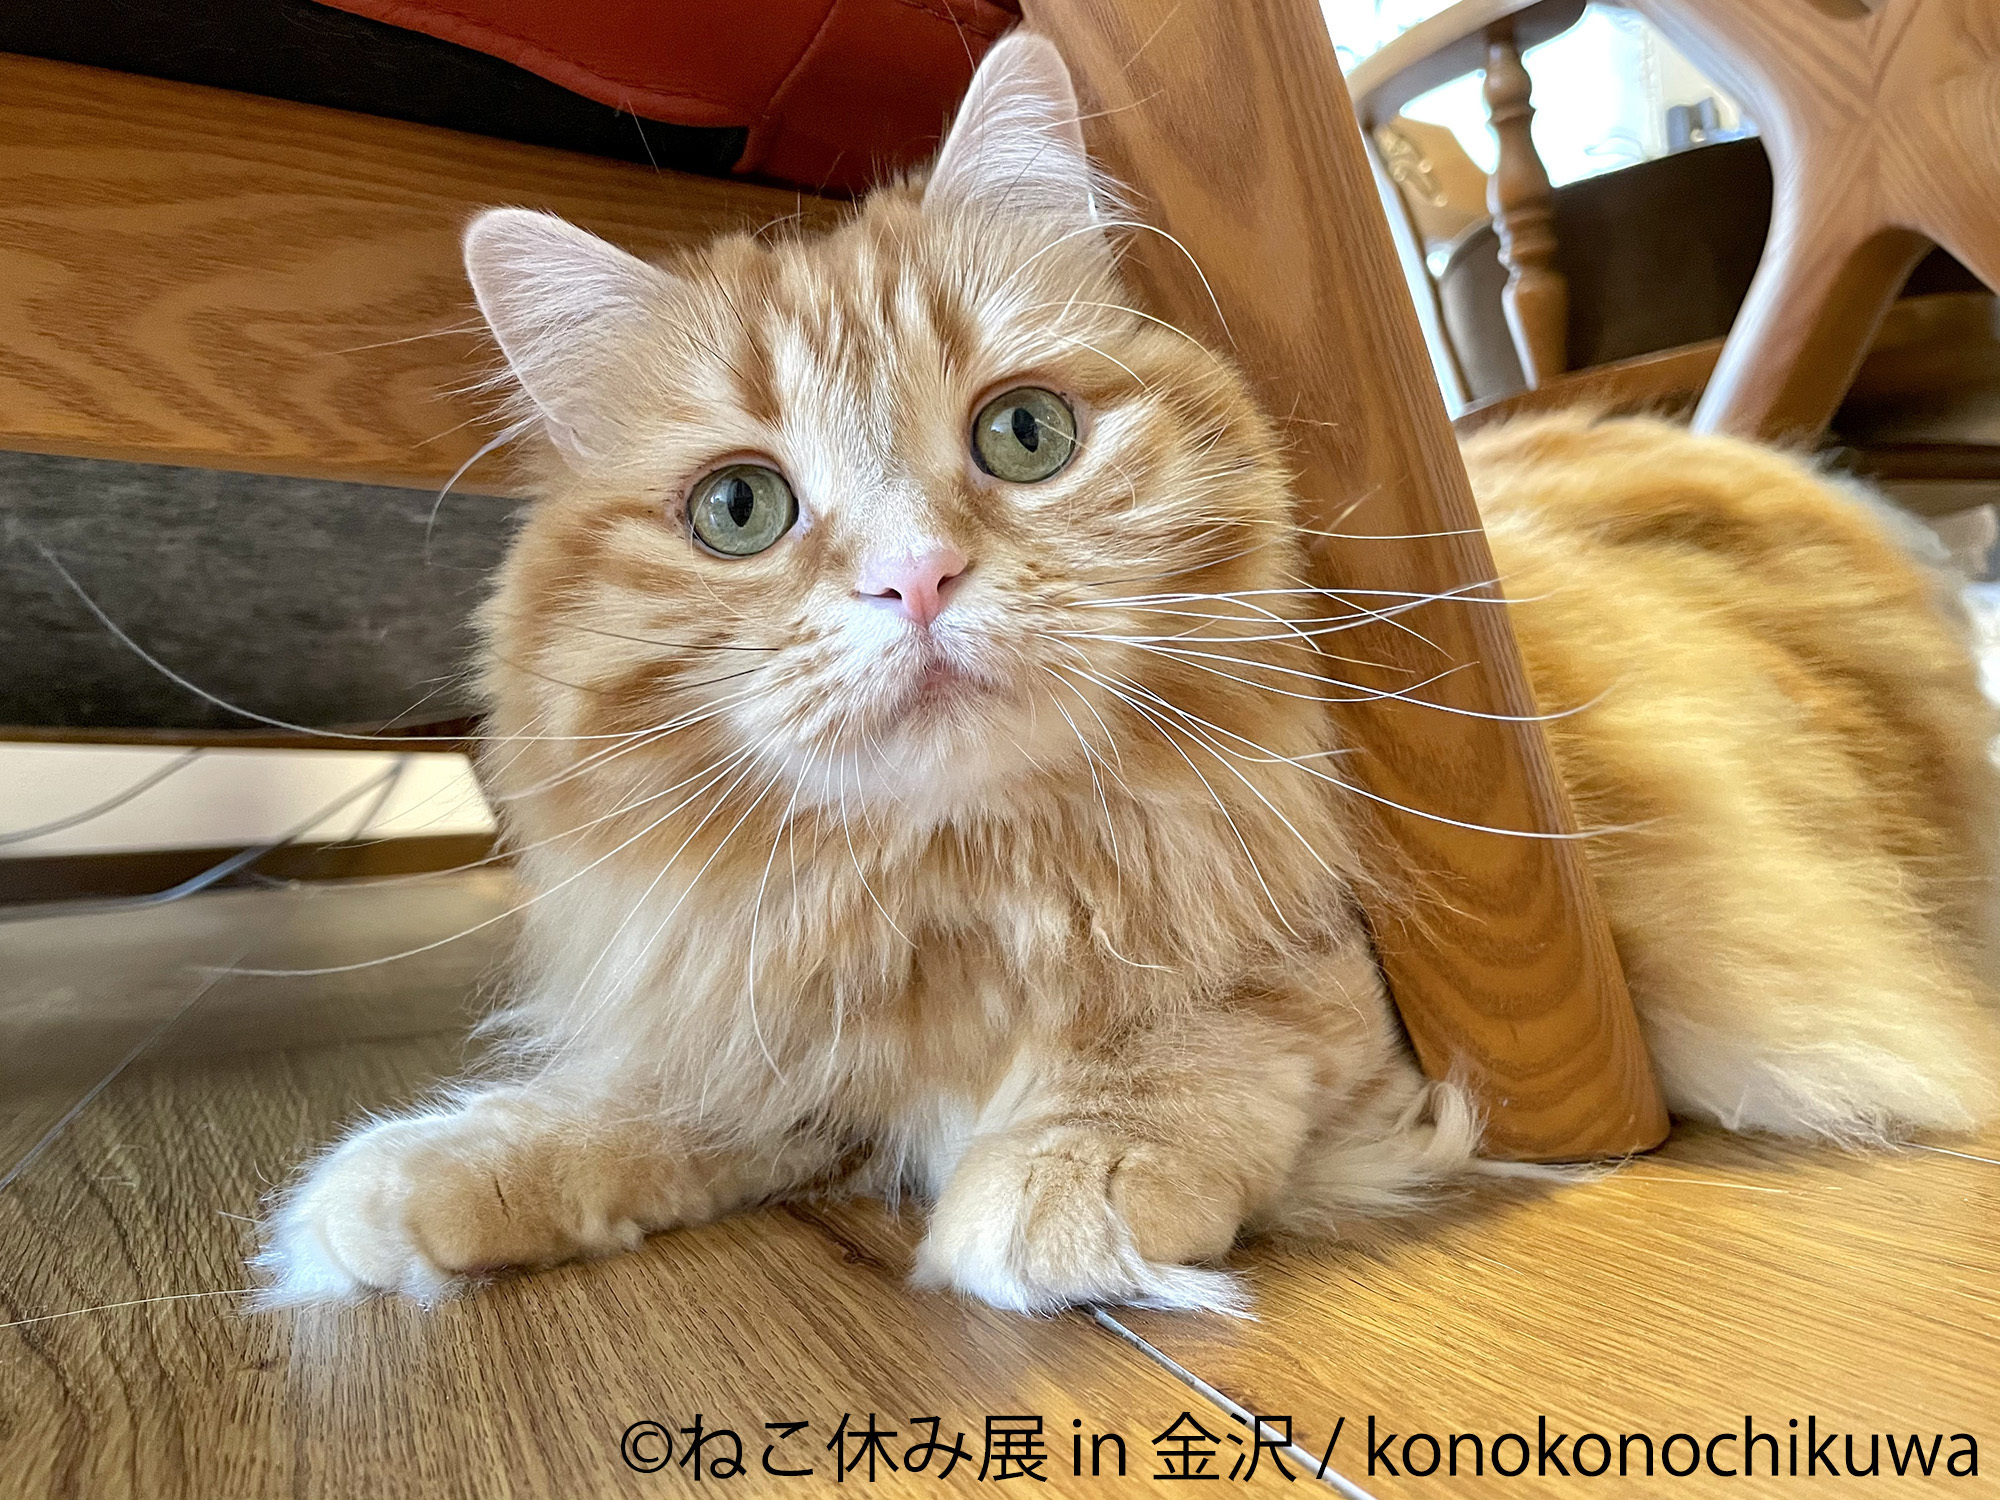 金沢初開催 Snsで人気の猫作品が大集結 ねこまみれ 空間 ねこ休み展 In 金沢 7 21 金沢21世紀美術館で開催 株式会社baconのプレスリリース